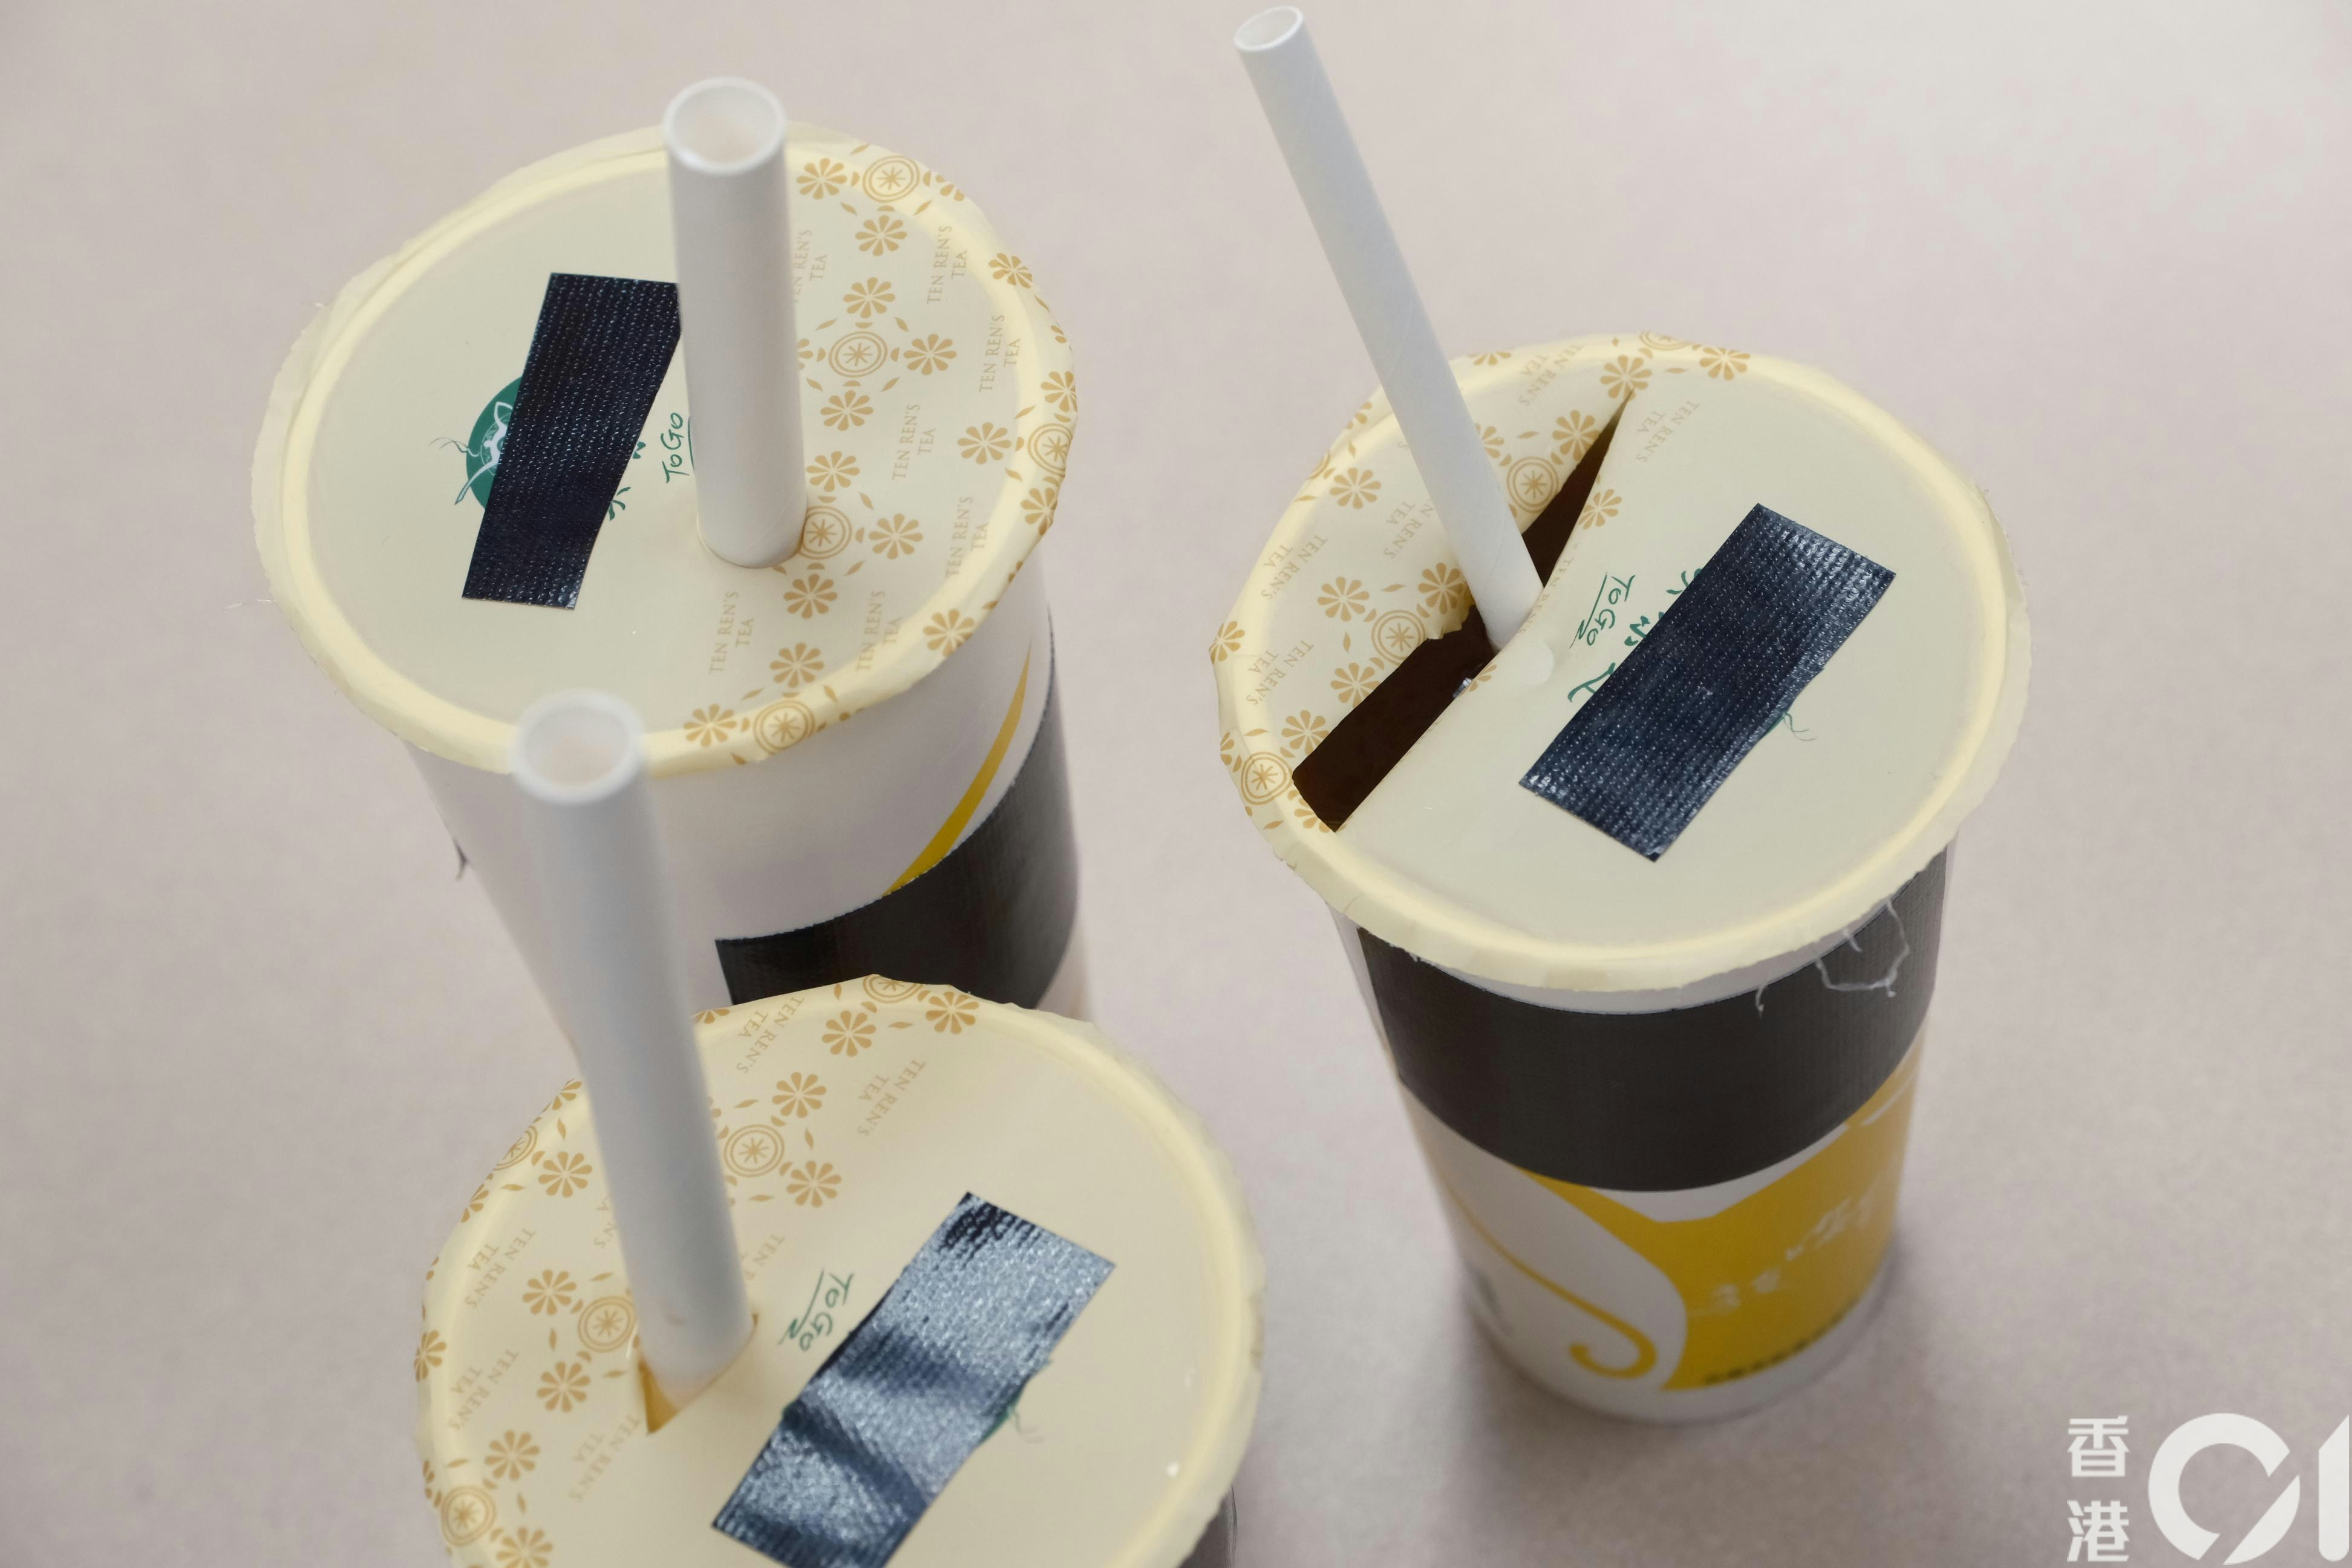 有采购商示范用纸饮筒刺穿珍珠奶茶杯面胶膜。（卢翊铭摄）